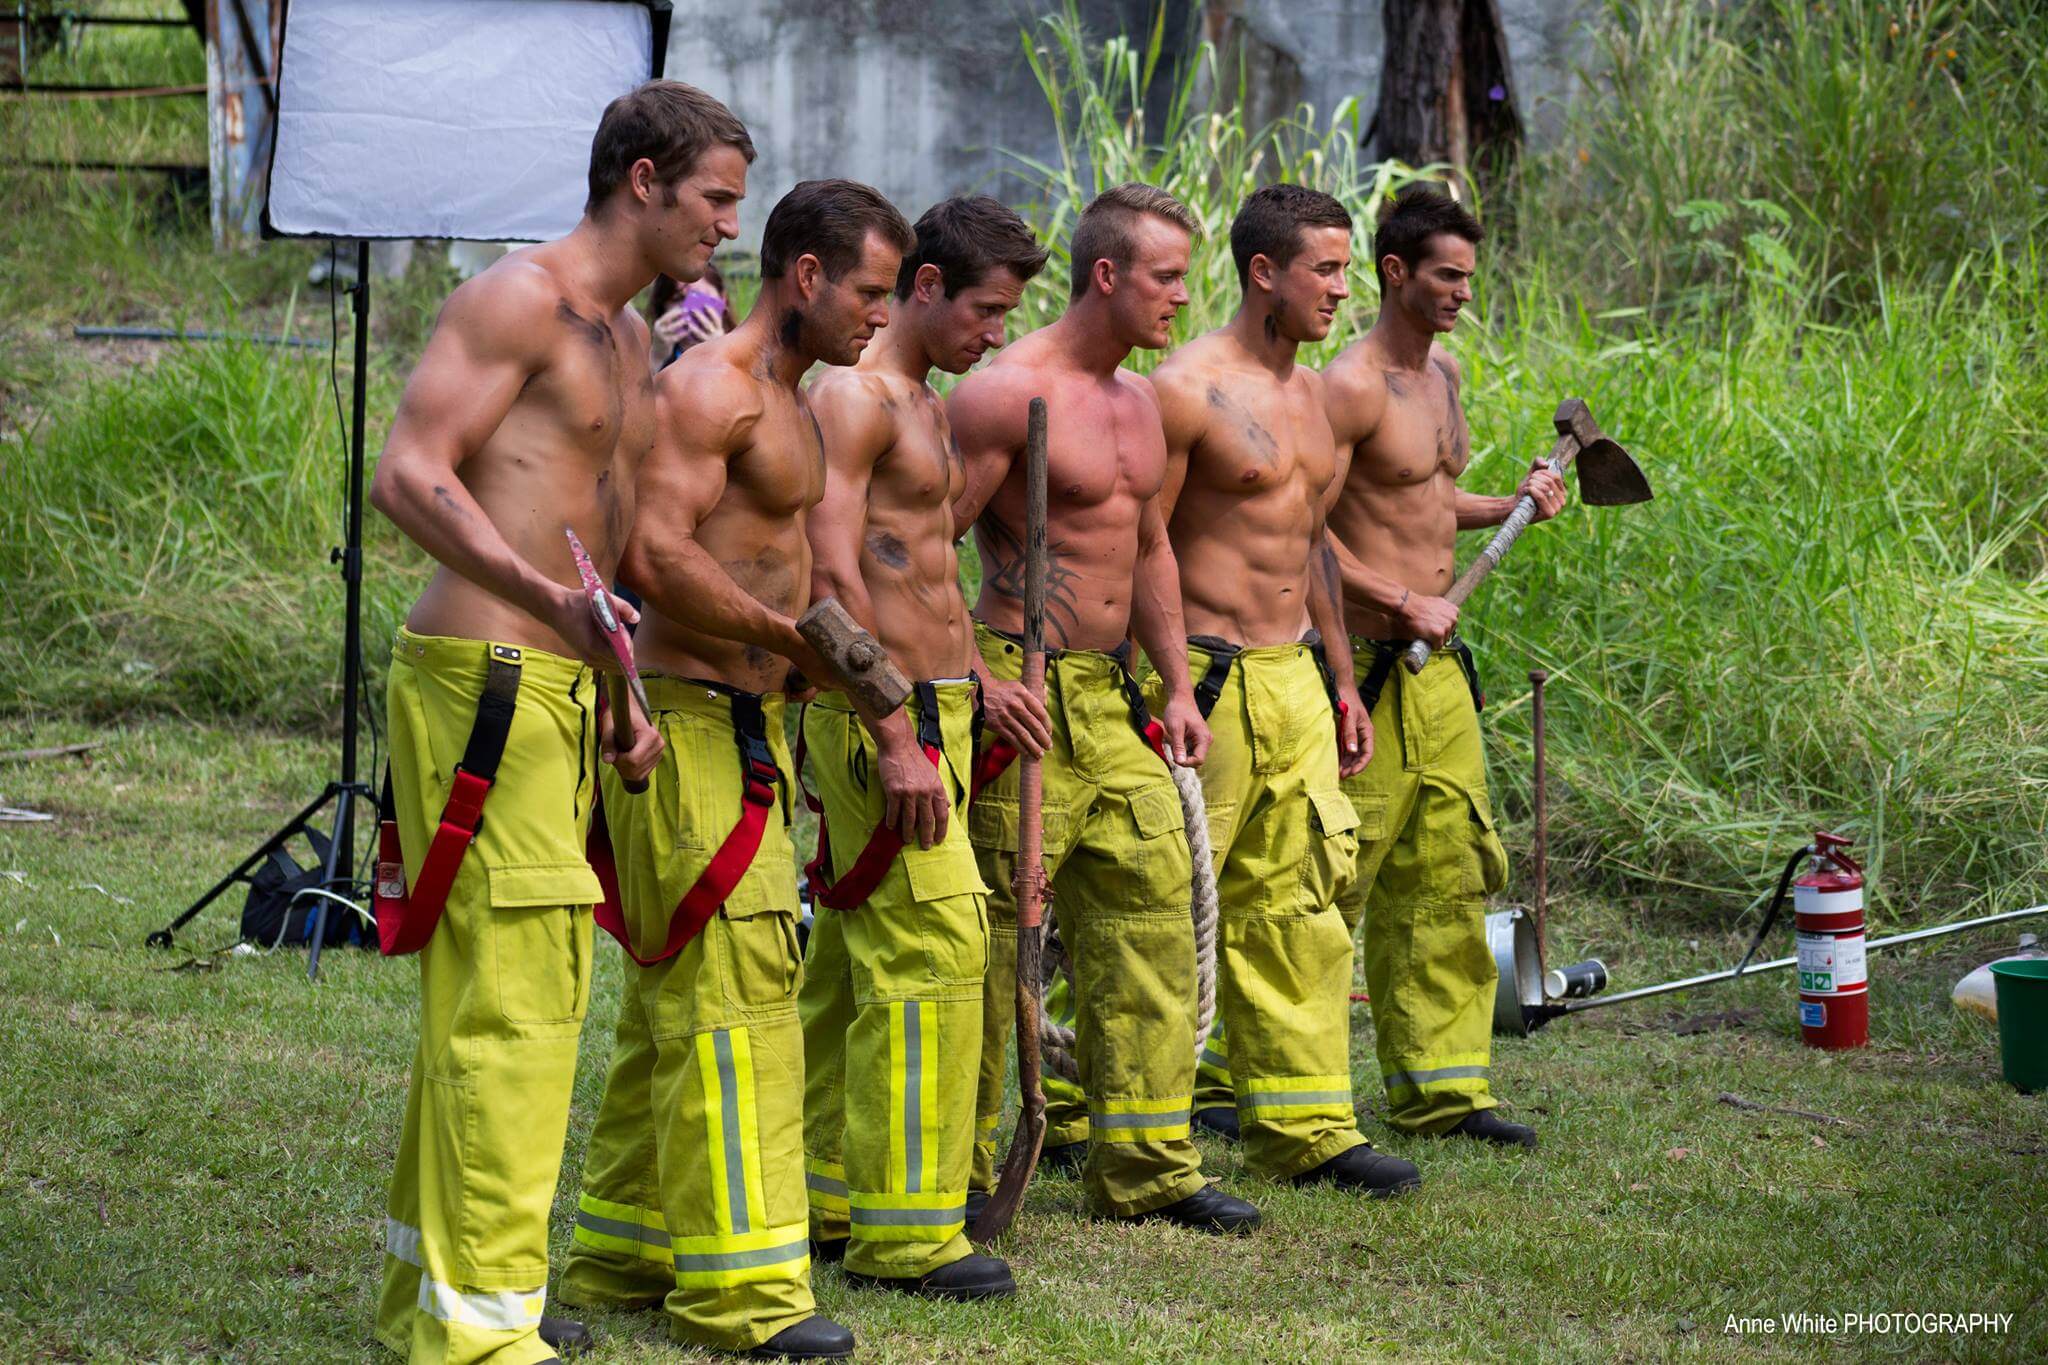 Ecco un valido motivo per chiamare i pompieri